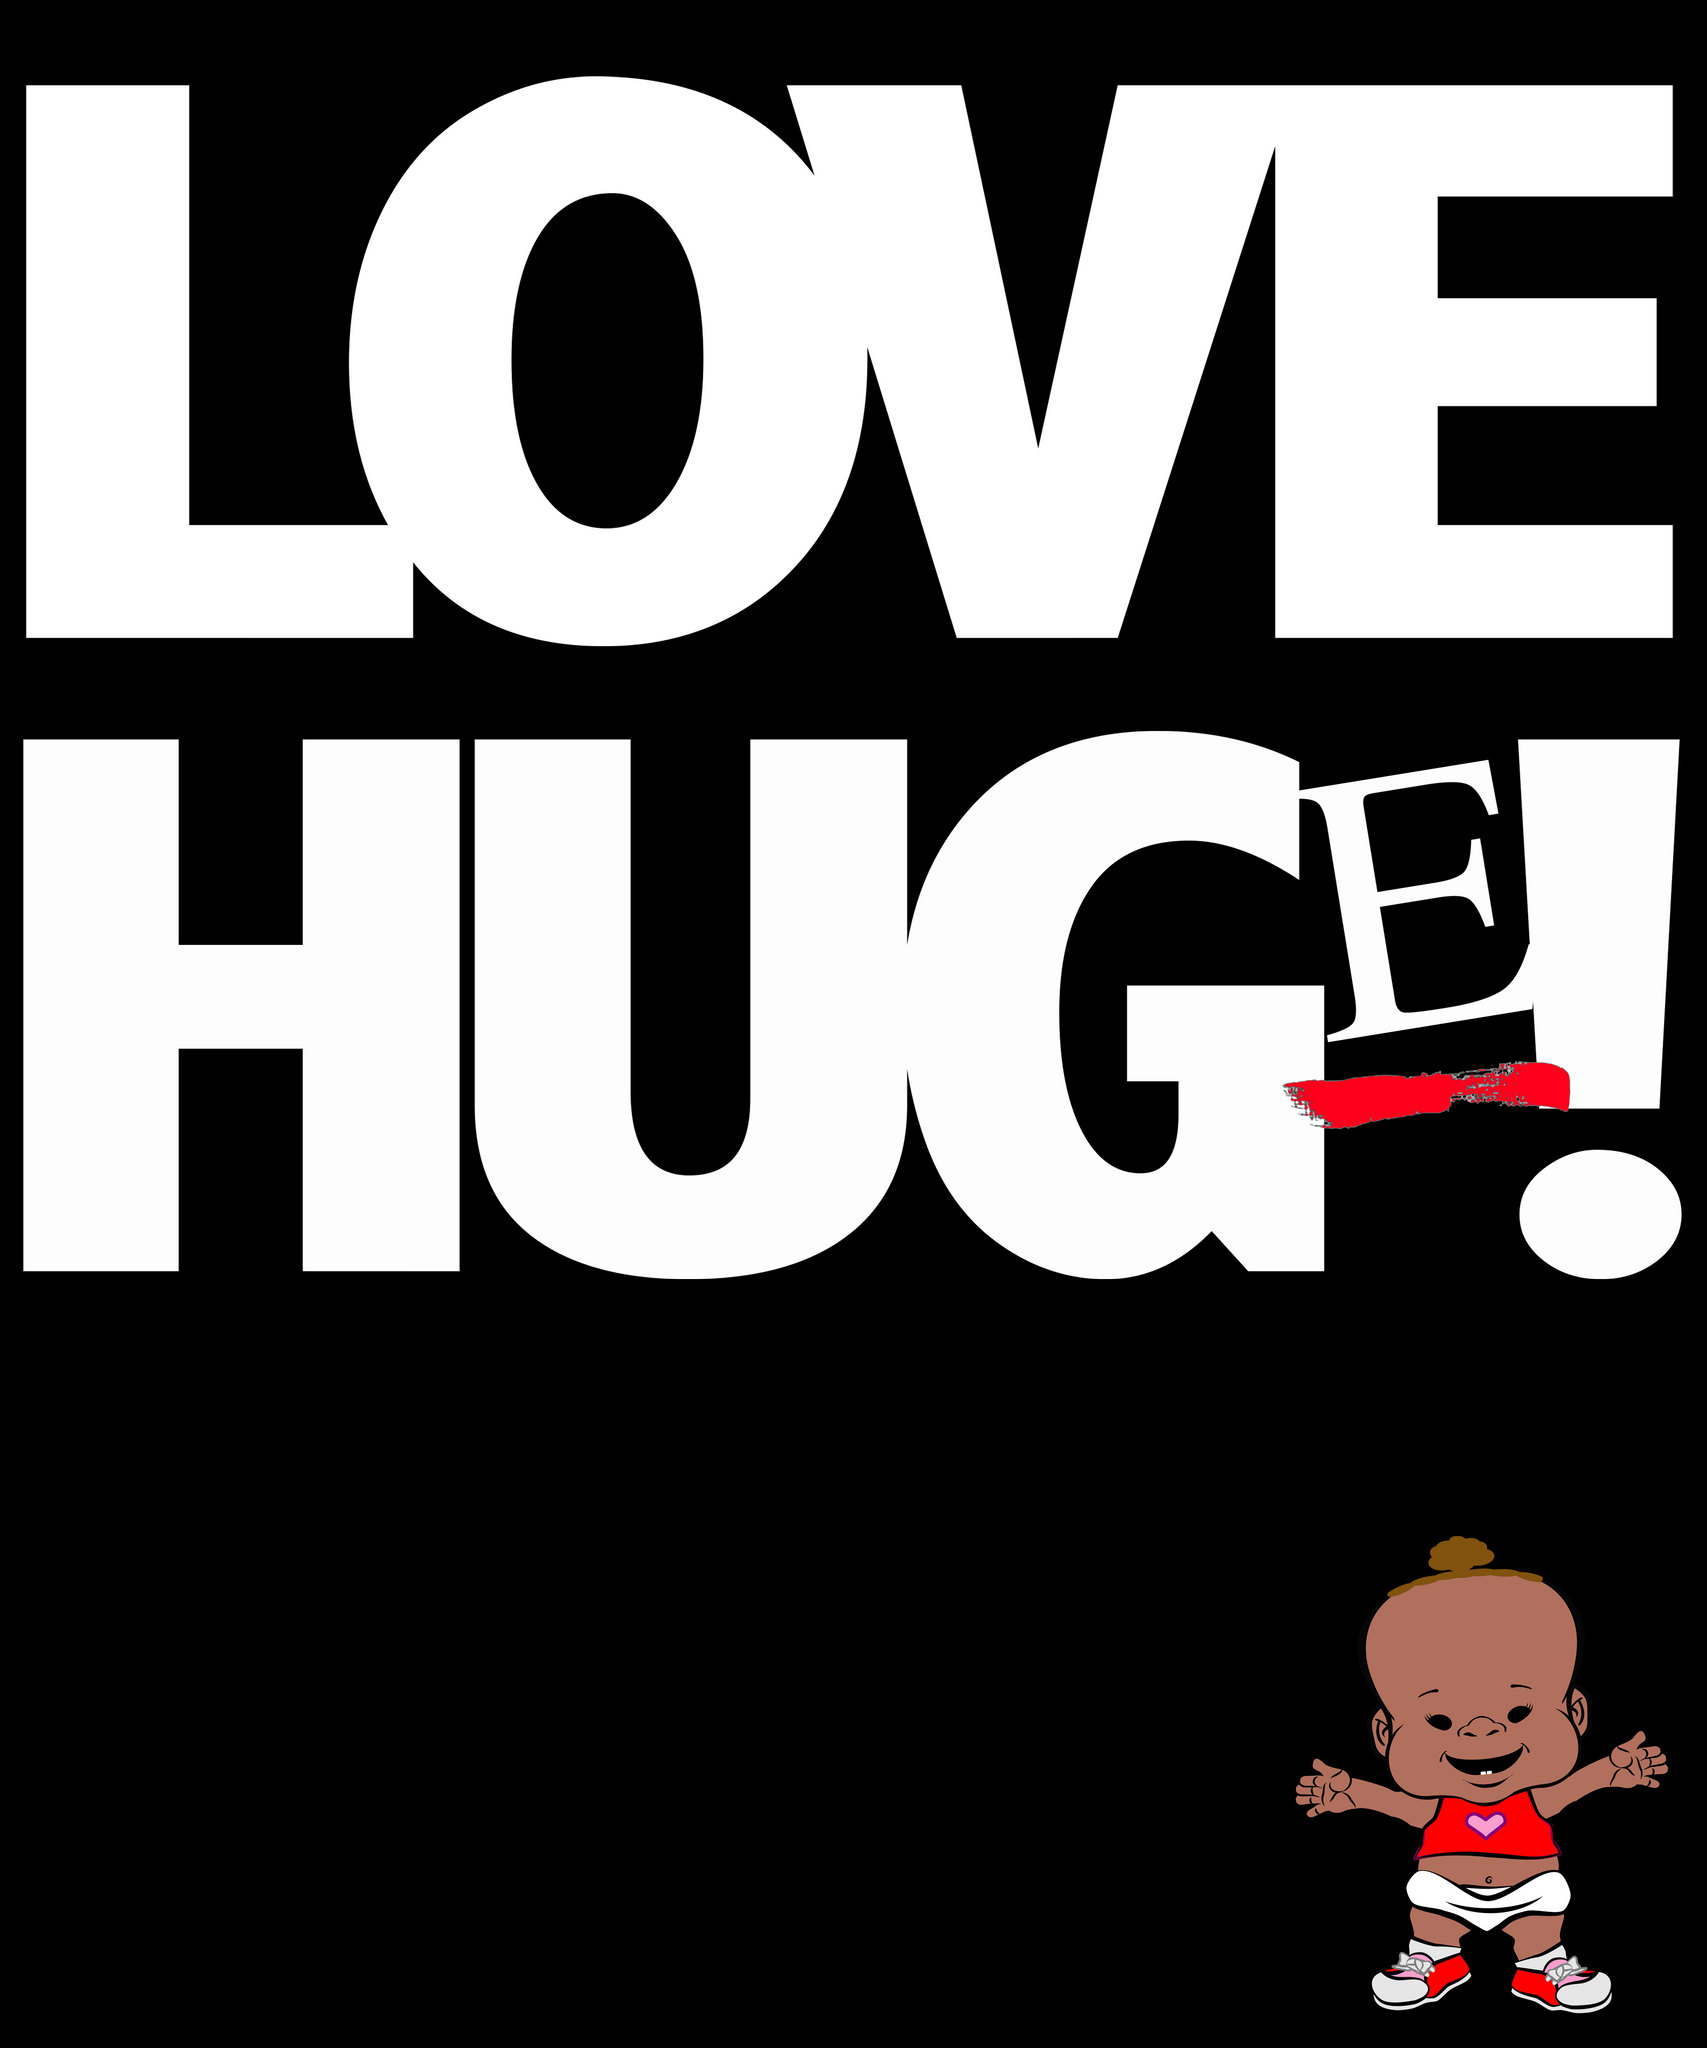 PBYZ1254_Love_Hug(e)_girl_3_Black